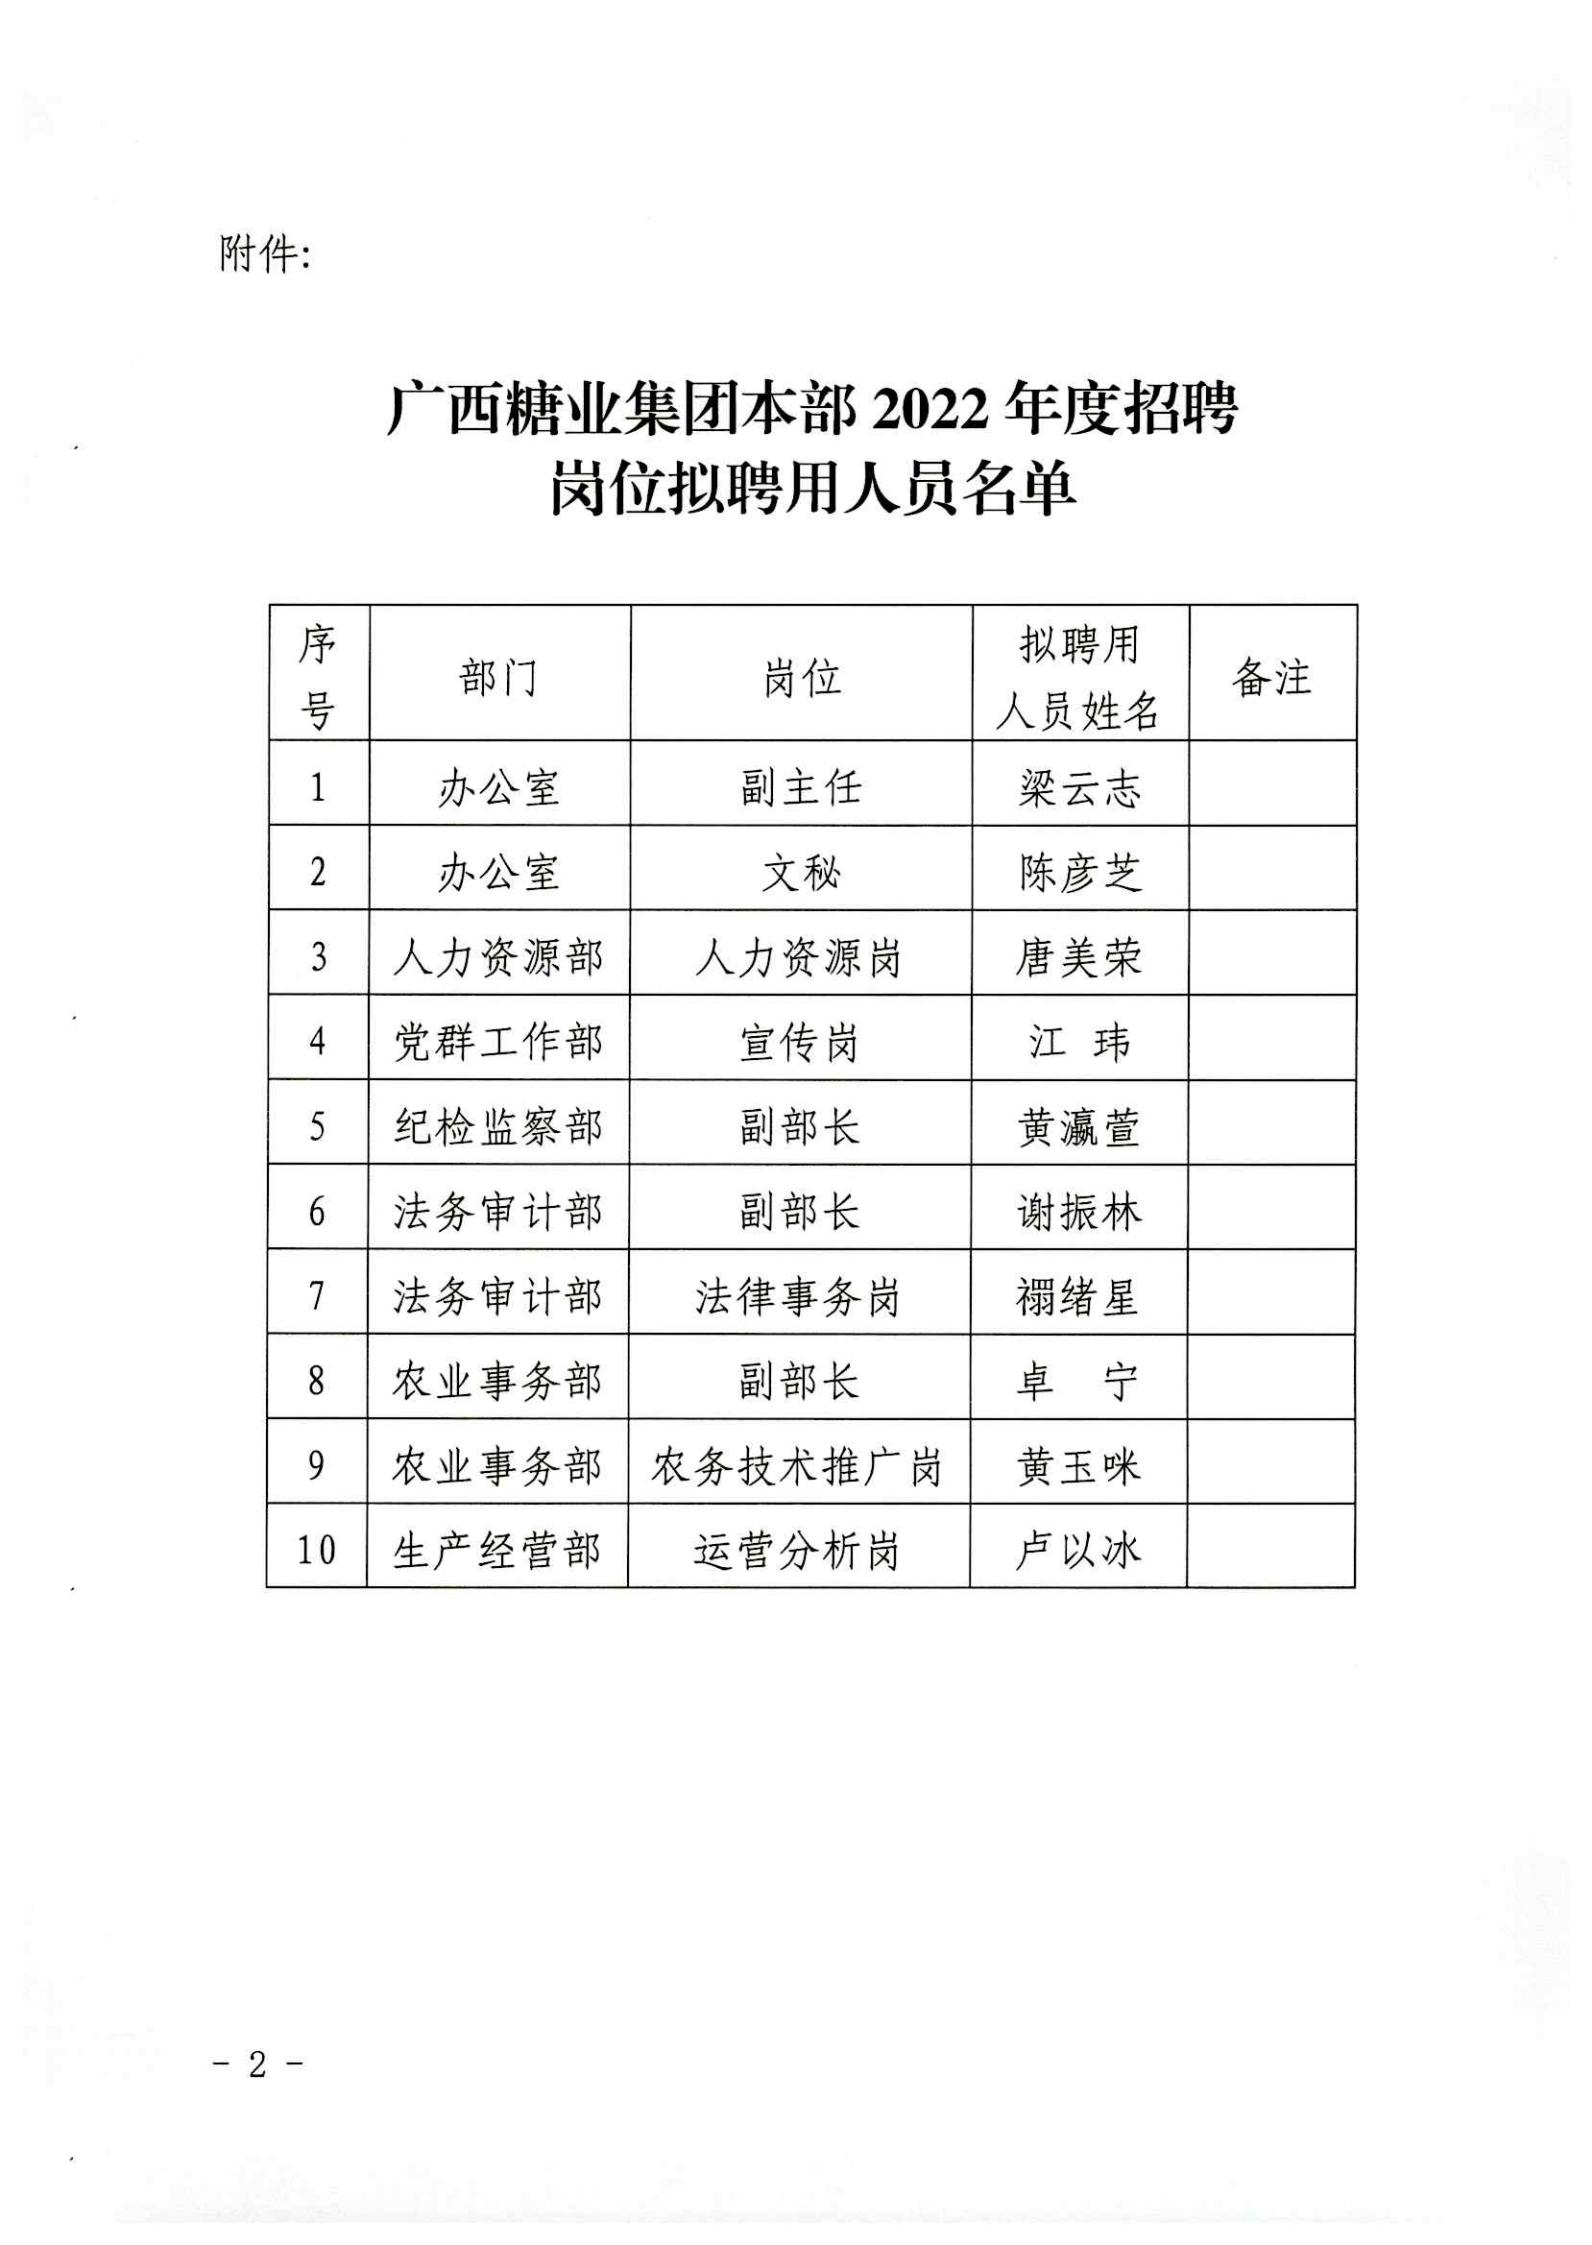 完美体育app(中国)股份有限公司官网本部2022年度招聘岗位拟聘用人员名单公示 (2)_02.jpg